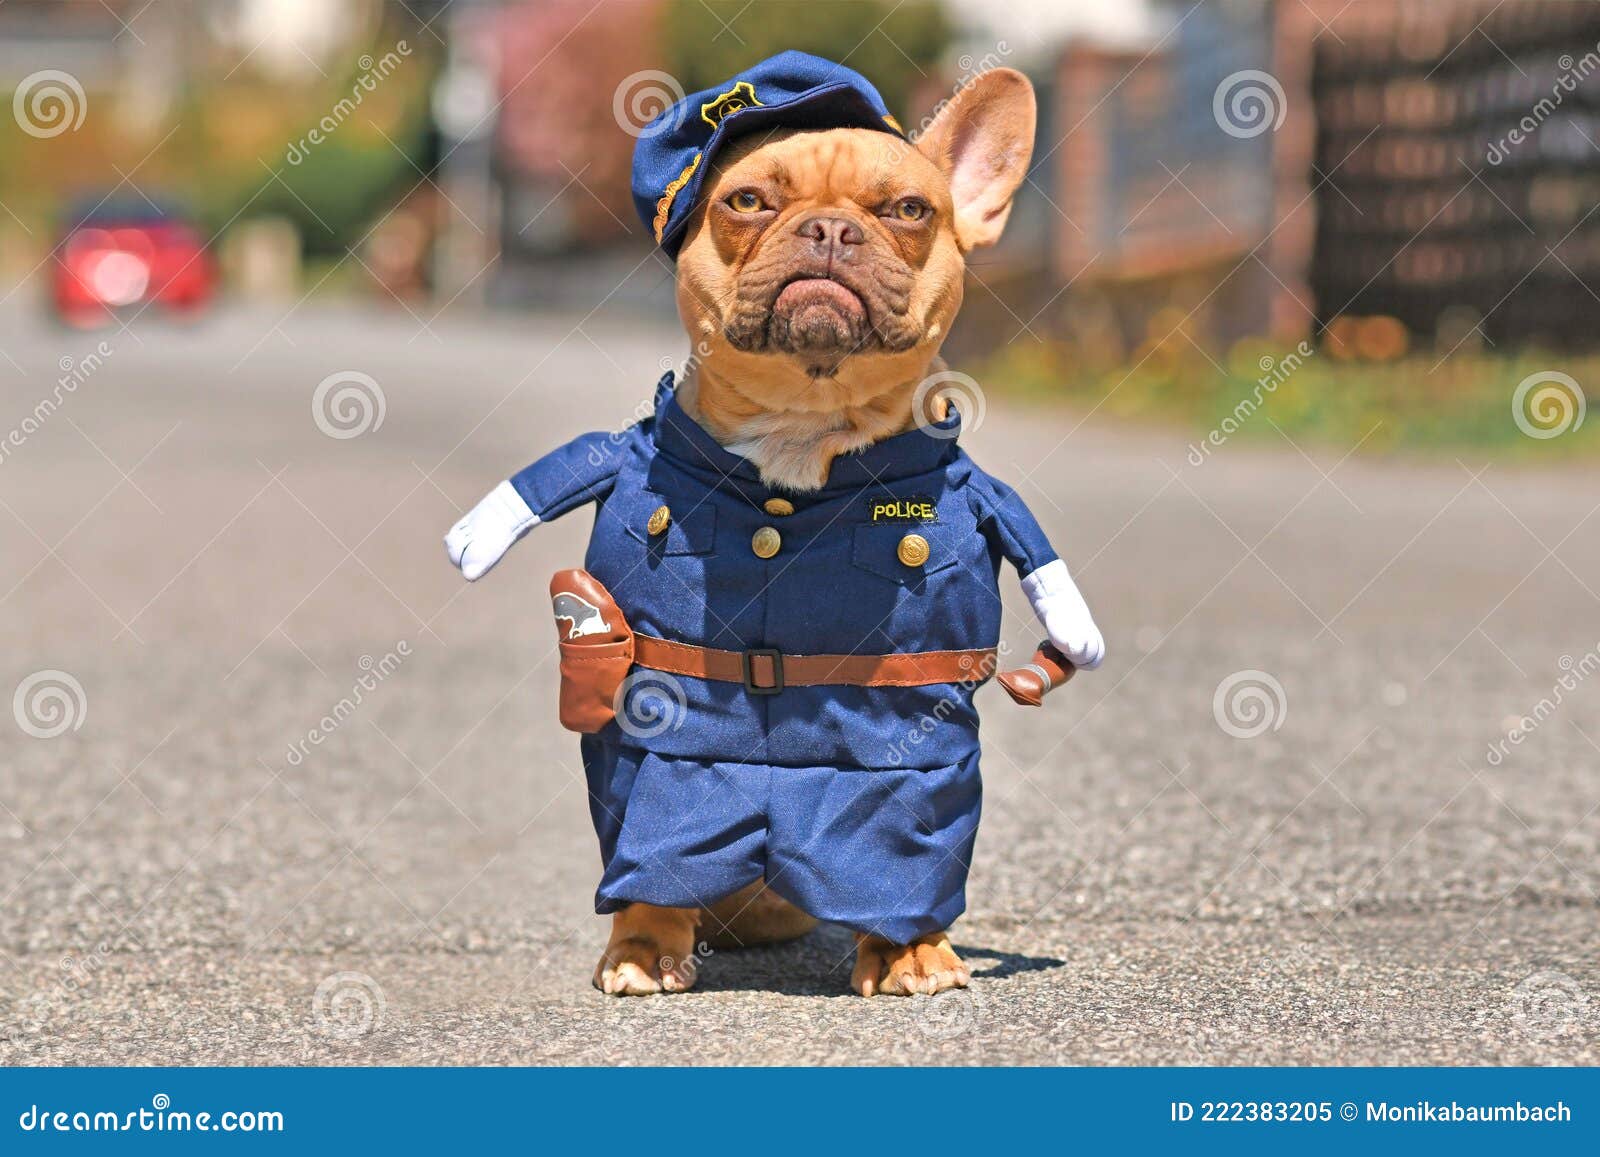 Lujoso Elegancia Ordenado Perro De Toros Rojo Francés Vestido Con Uniforme De Oficial De Policía  Gracioso Con Brazos Falsos Imagen de archivo - Imagen de guarda, humanice:  222383205